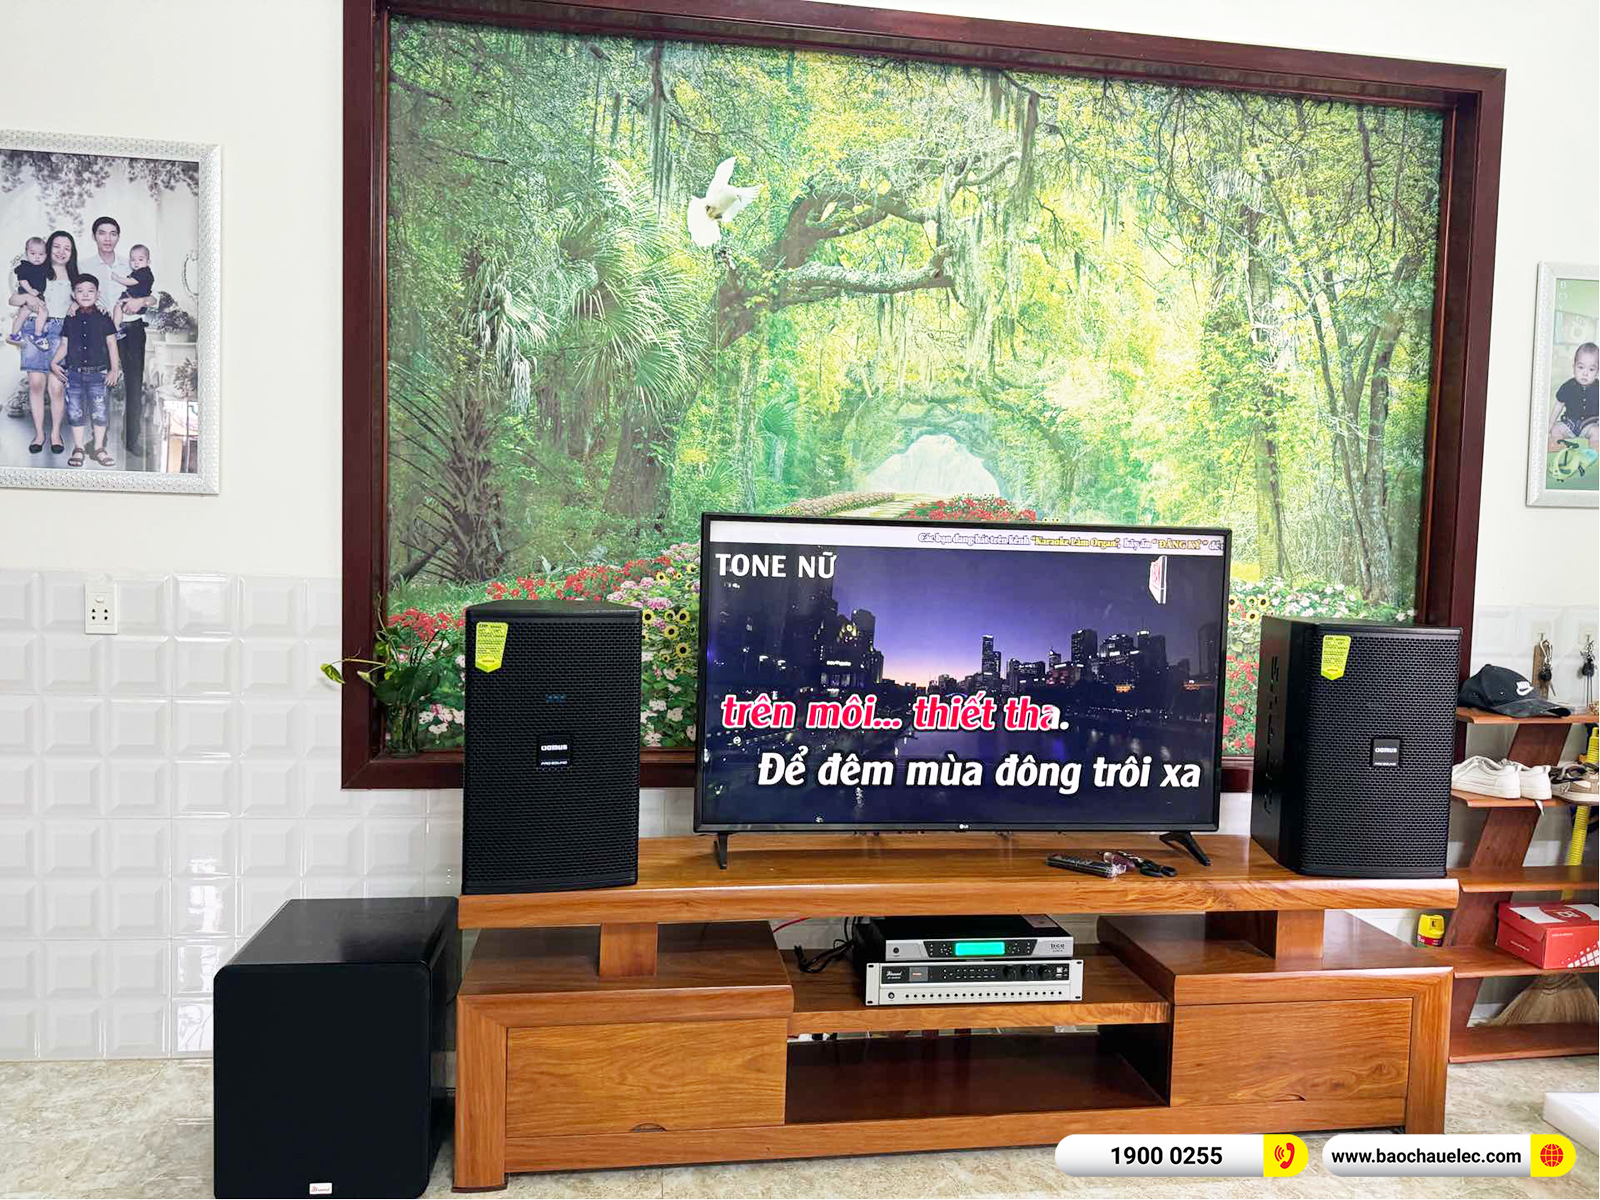 Lắp đặt dàn karaoke Domus hơn 29tr cho chị Phương tại Quảng Nam